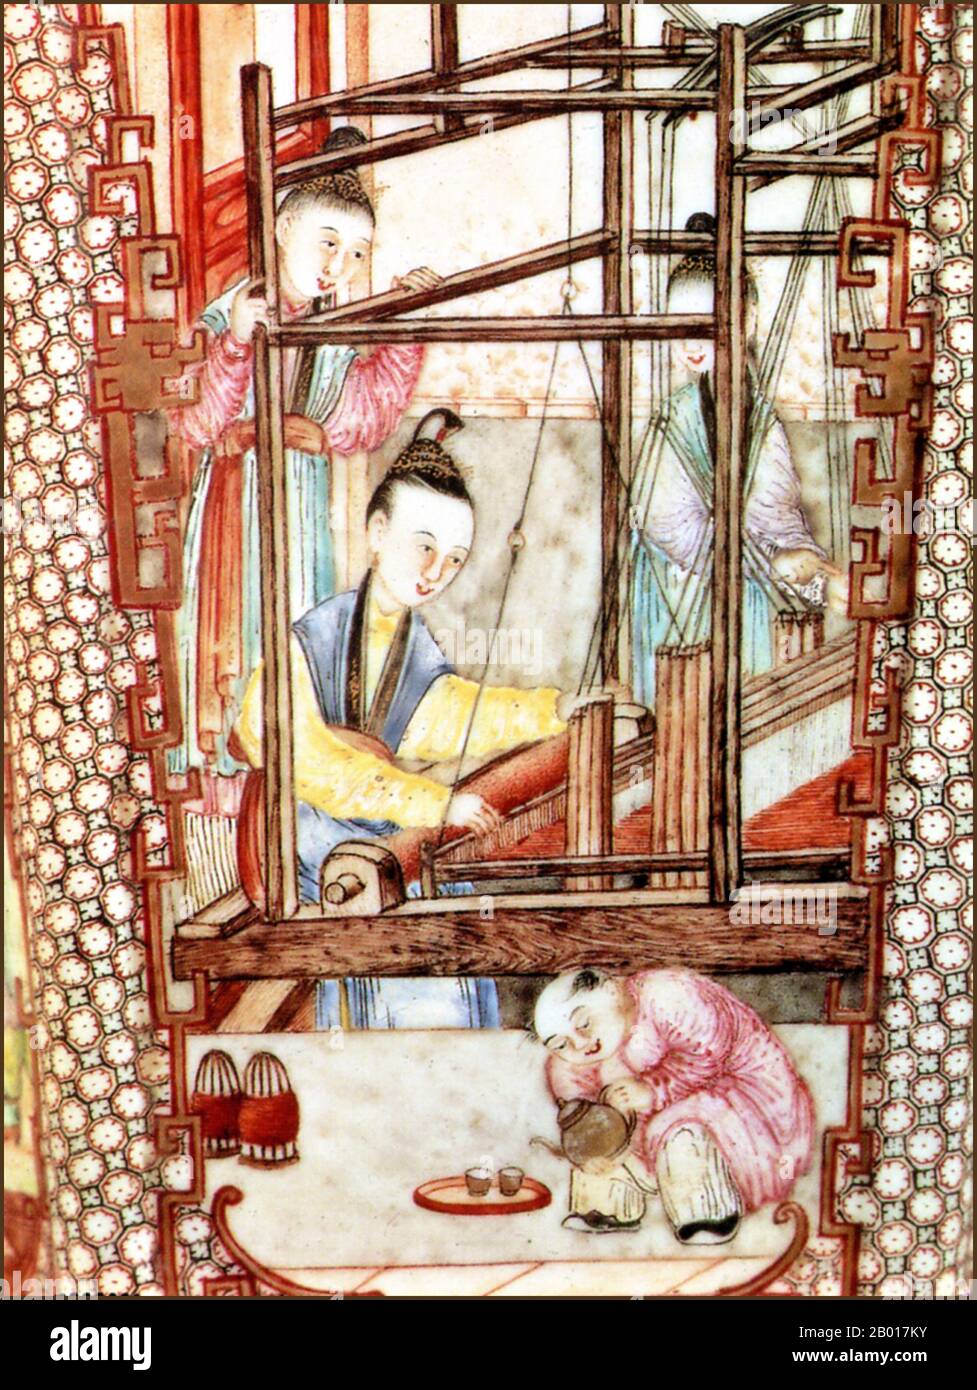 Cina: Ming Dynasty pittura ceramica di tessitori di seta al lavoro, 15th secolo. Tre donne tessitori di seta al lavoro mentre un servo versa tazze di tè. Dettaglio da un vaso in ceramica Ming. Foto Stock